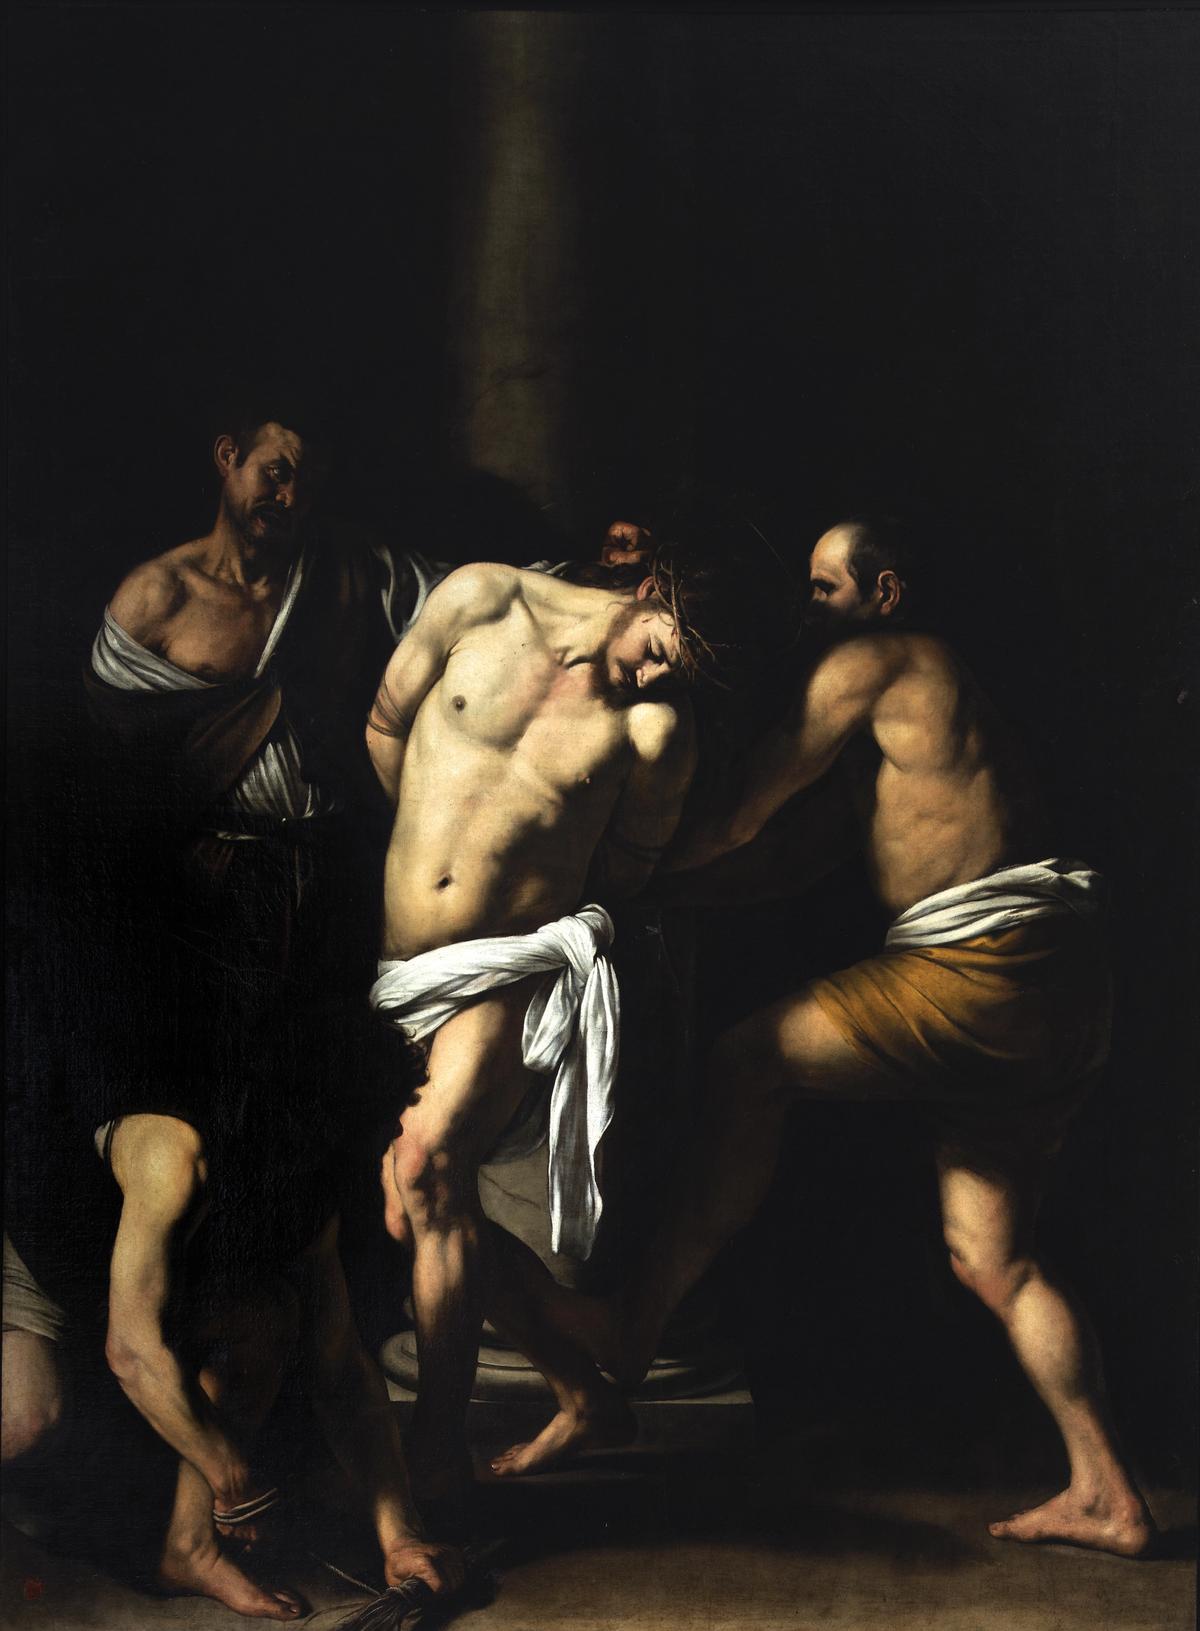 The Capodimonte version of Caravaggio’s Flagellation of Christ (1607) was originally created for the church of San Domenico Maggiore Courtesy of Capodimonte